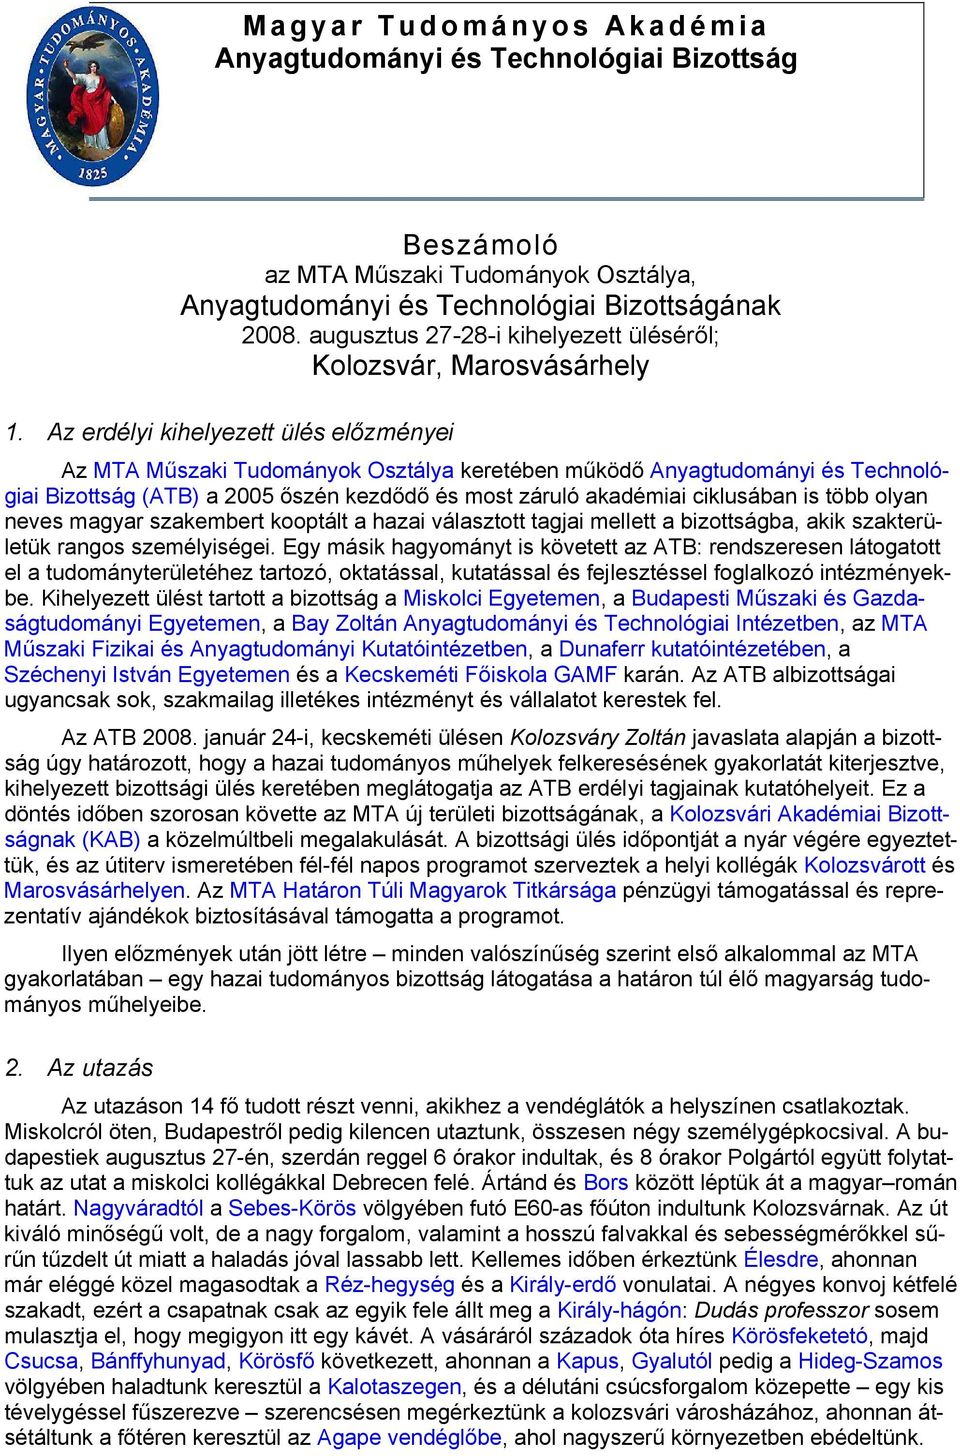 Az erdélyi kihelyezett ülés előzményei Az MTA Műszaki Tudományok Osztálya keretében működő Anyagtudományi és Technológiai Bizottság (ATB) a 2005 őszén kezdődő és most záruló akadémiai ciklusában is